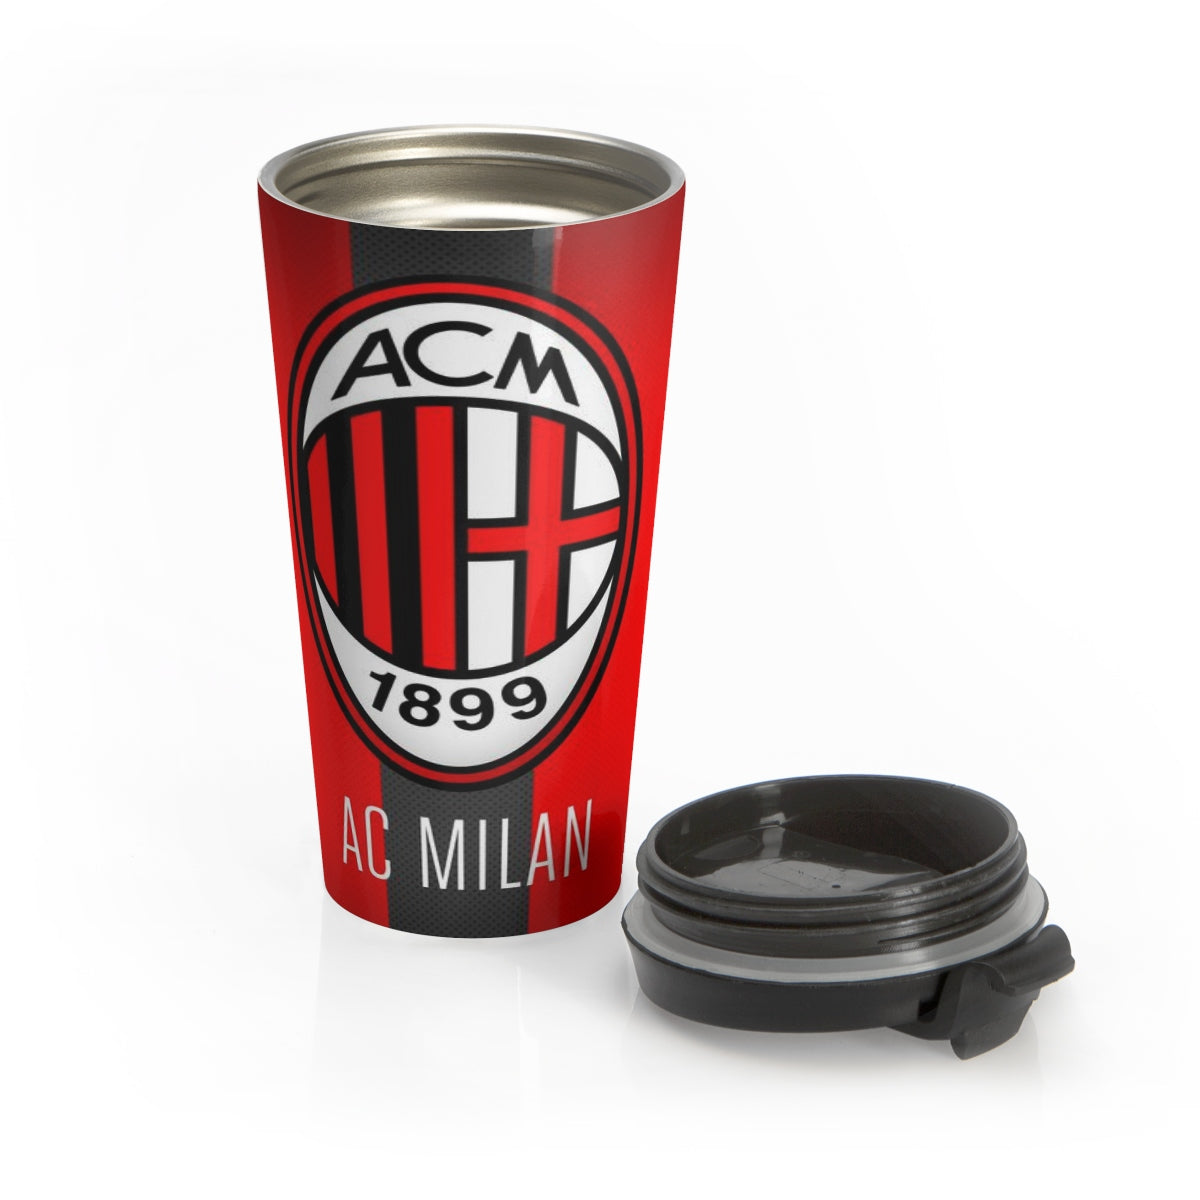 AC Milan Stainless Steel Travel Mug